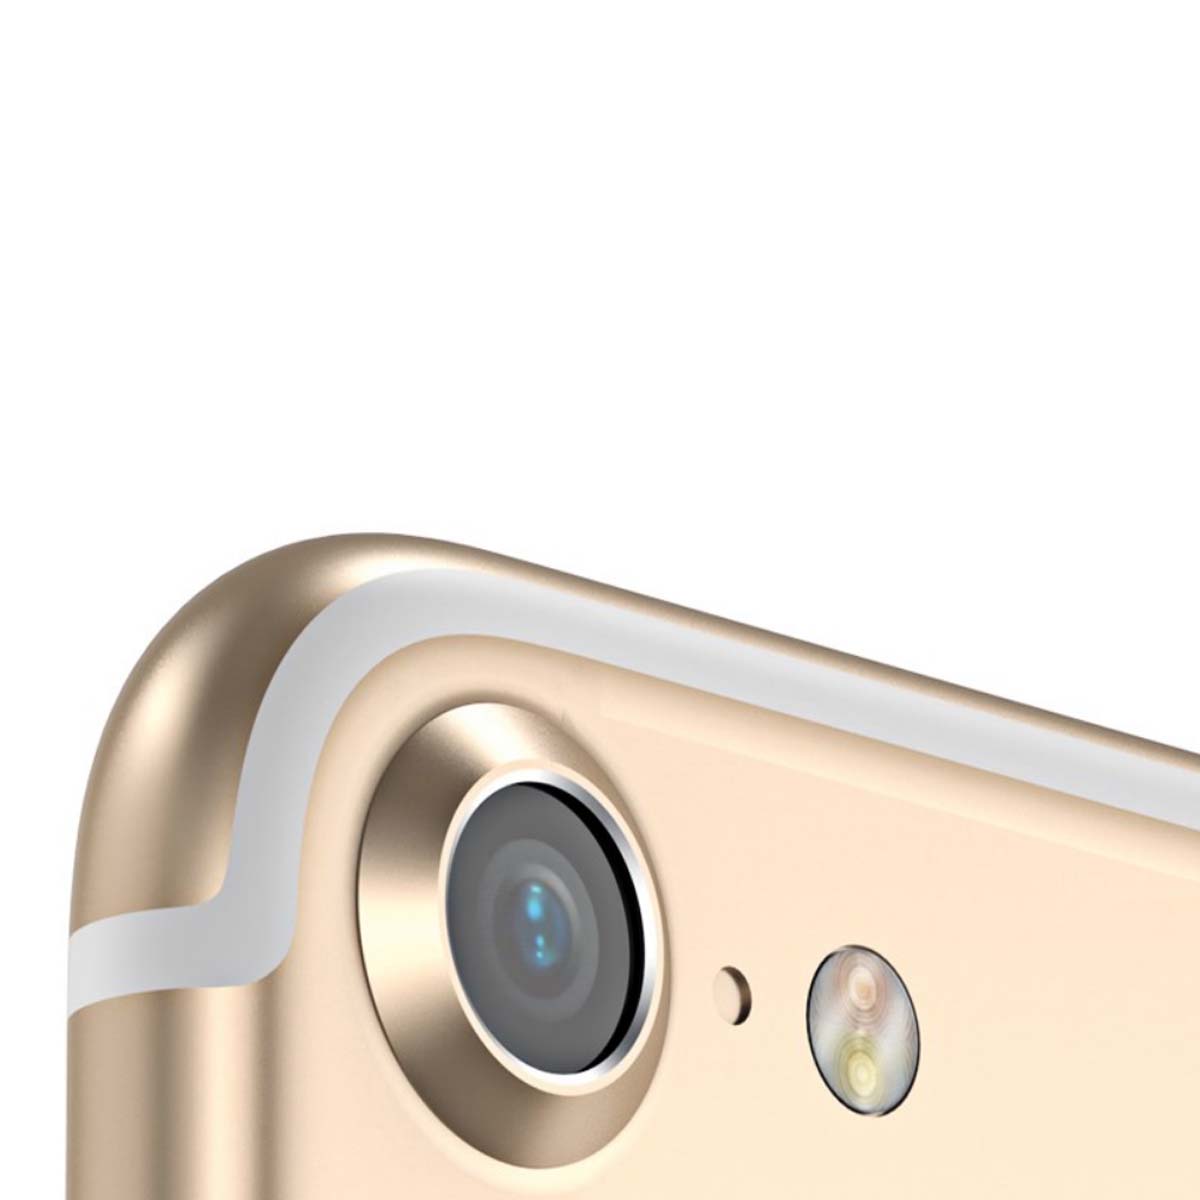 Ободок BASEUS Metal Lens Protection Ring на заднюю камеру для APPLE iPhone 7, iPhone 8, цвет окантовки золотистый